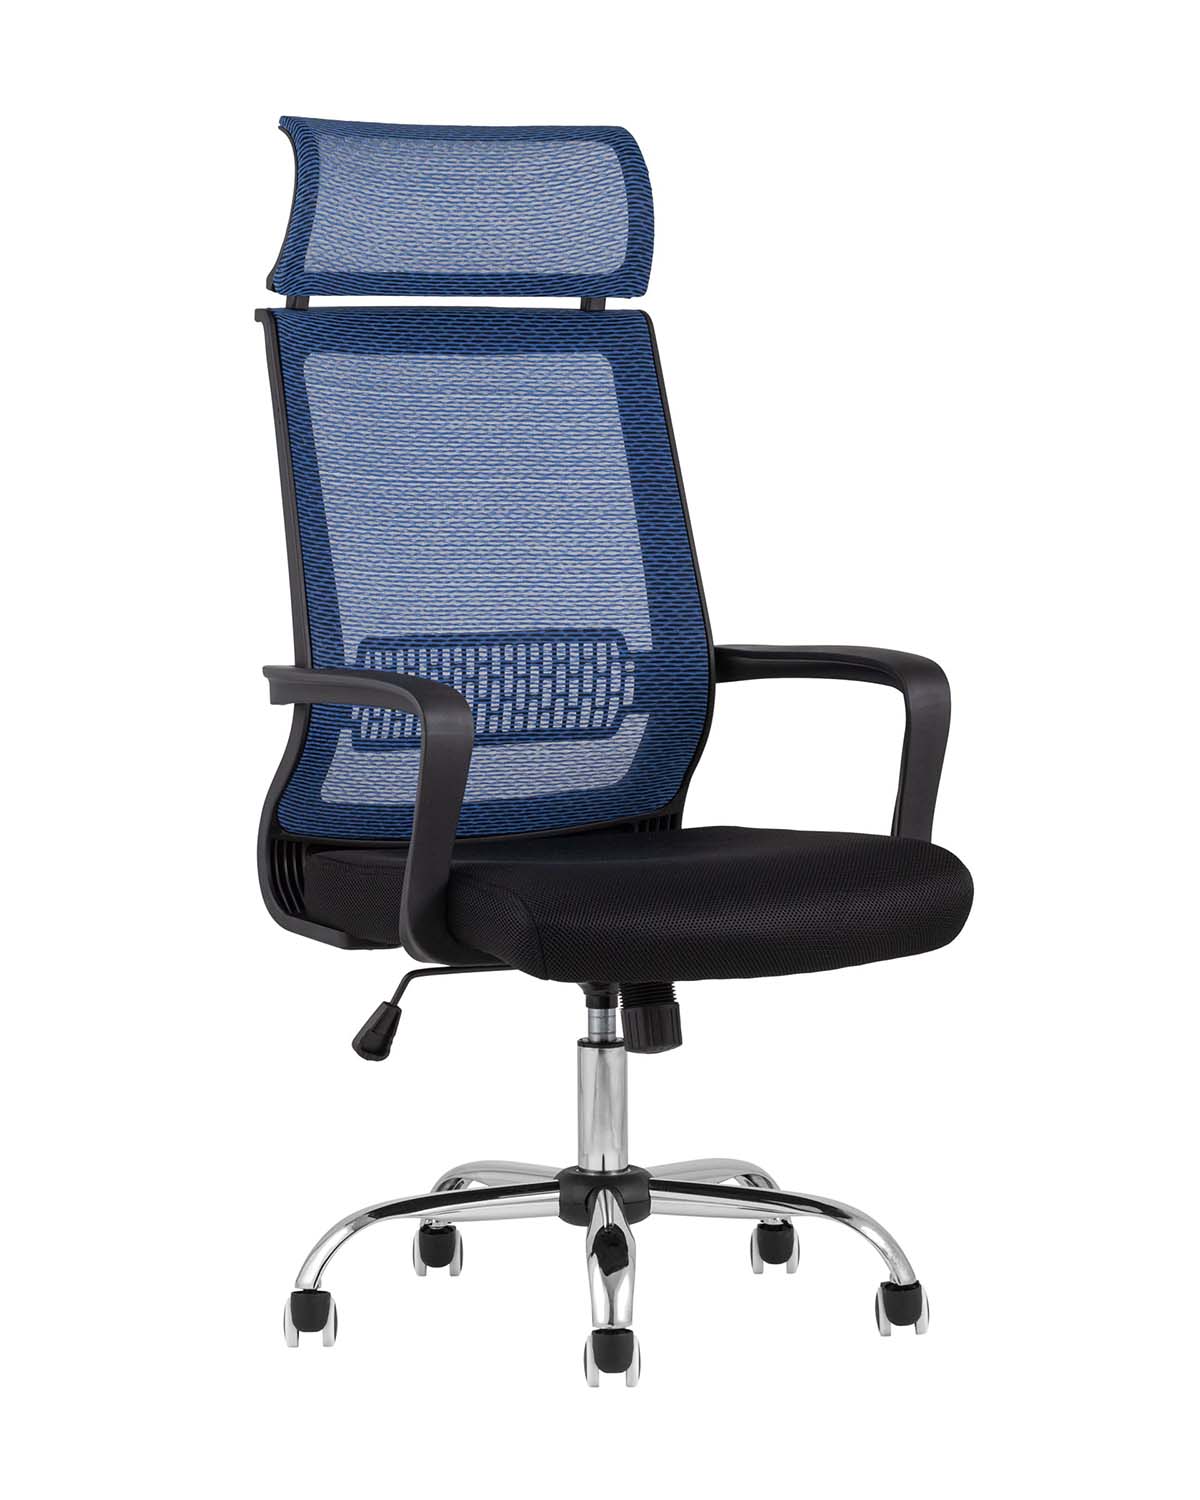 Компьютерное кресло TopChairs Style офисное голубое в обивке с сеткой, регулировка по высоте и механизм качания Top